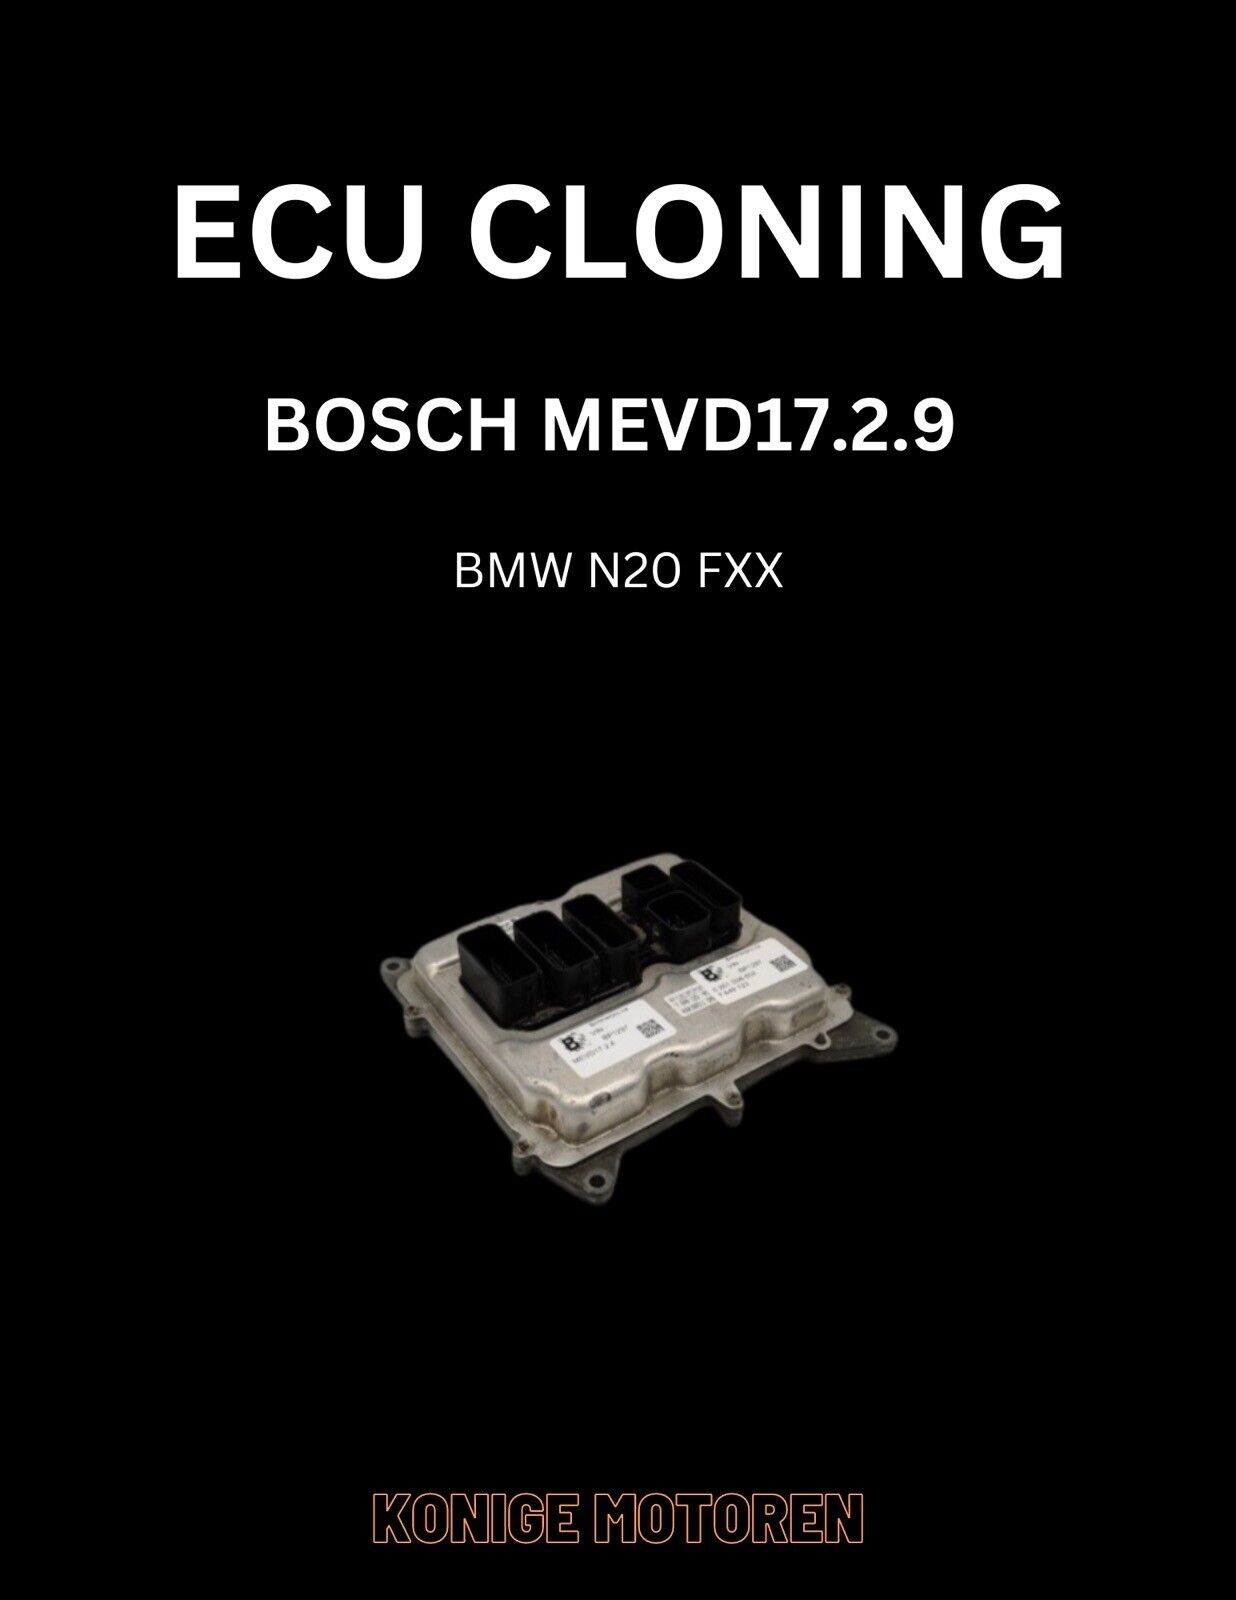 BMW N20 FXX MODELS - ECU CLONING SERVICE - BOSCH MEVD17.2.9